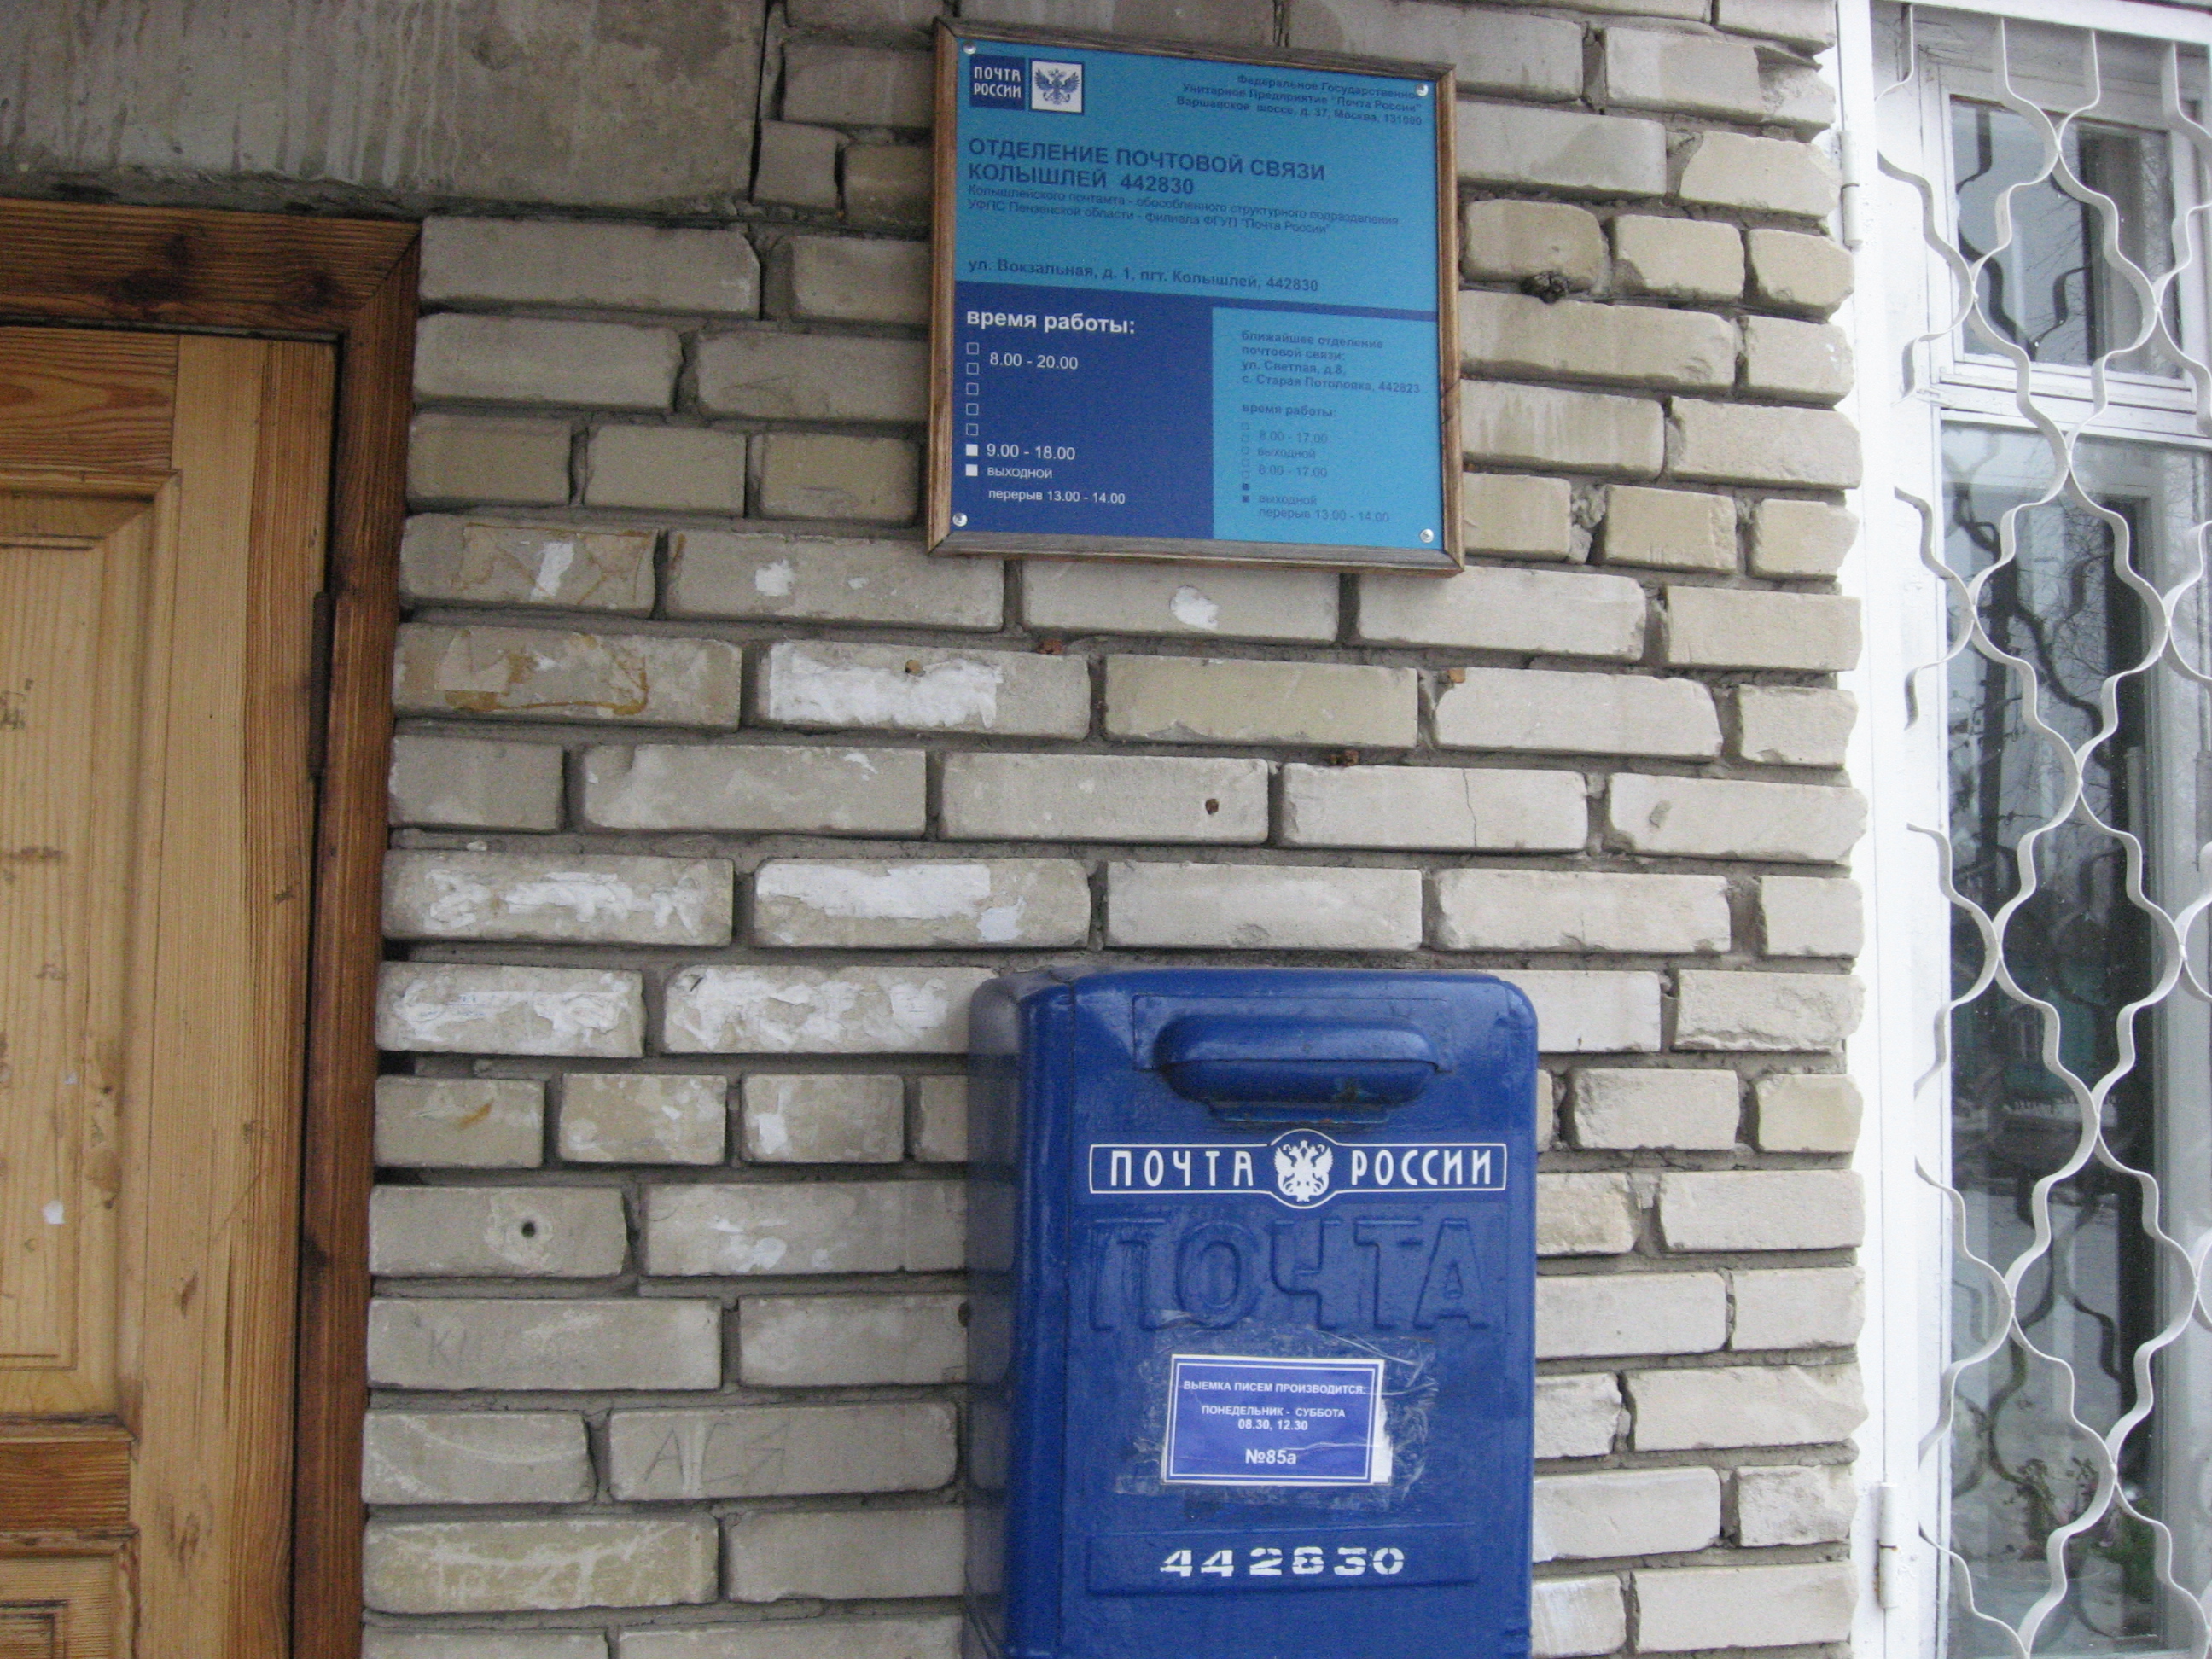 ВХОД, отделение почтовой связи 442849, Пензенская обл., Колышлейский р-он